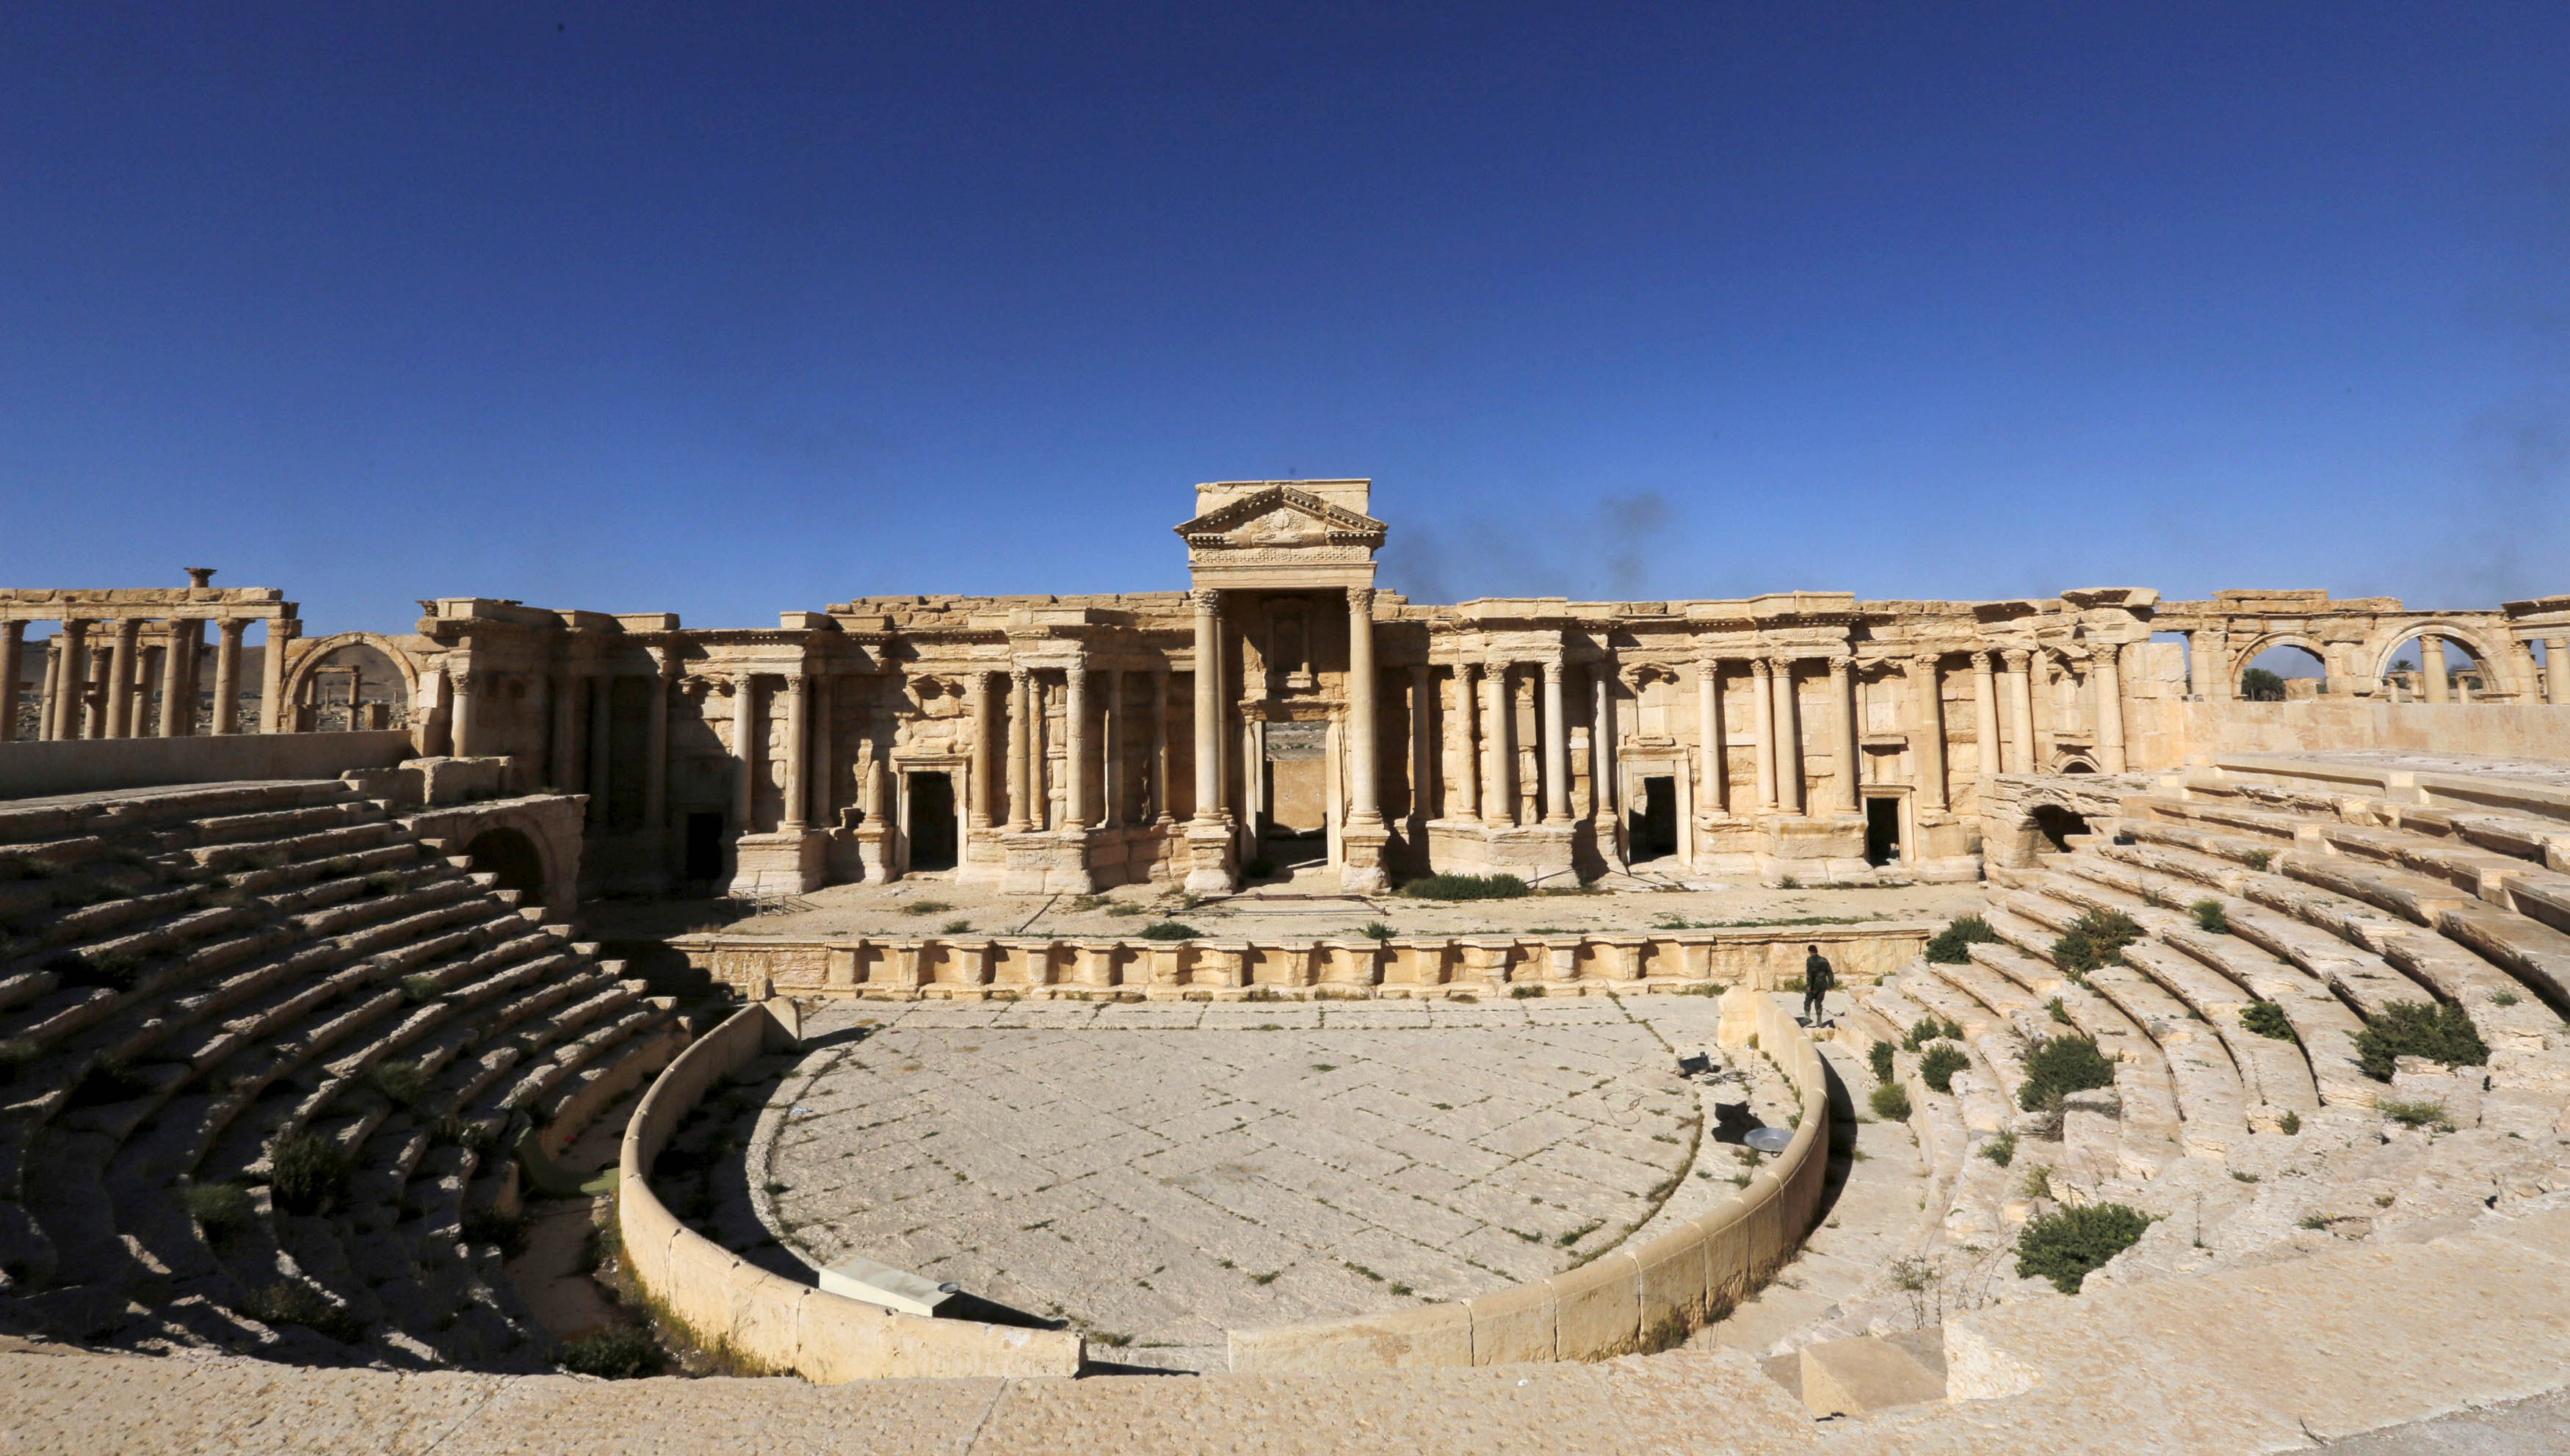 Daesh ha vuelto a dañar más antigüedades en la ciudad de Palmira, cuyas ruinas grecorromanas son Patrimonio Monumental de la Unesco.